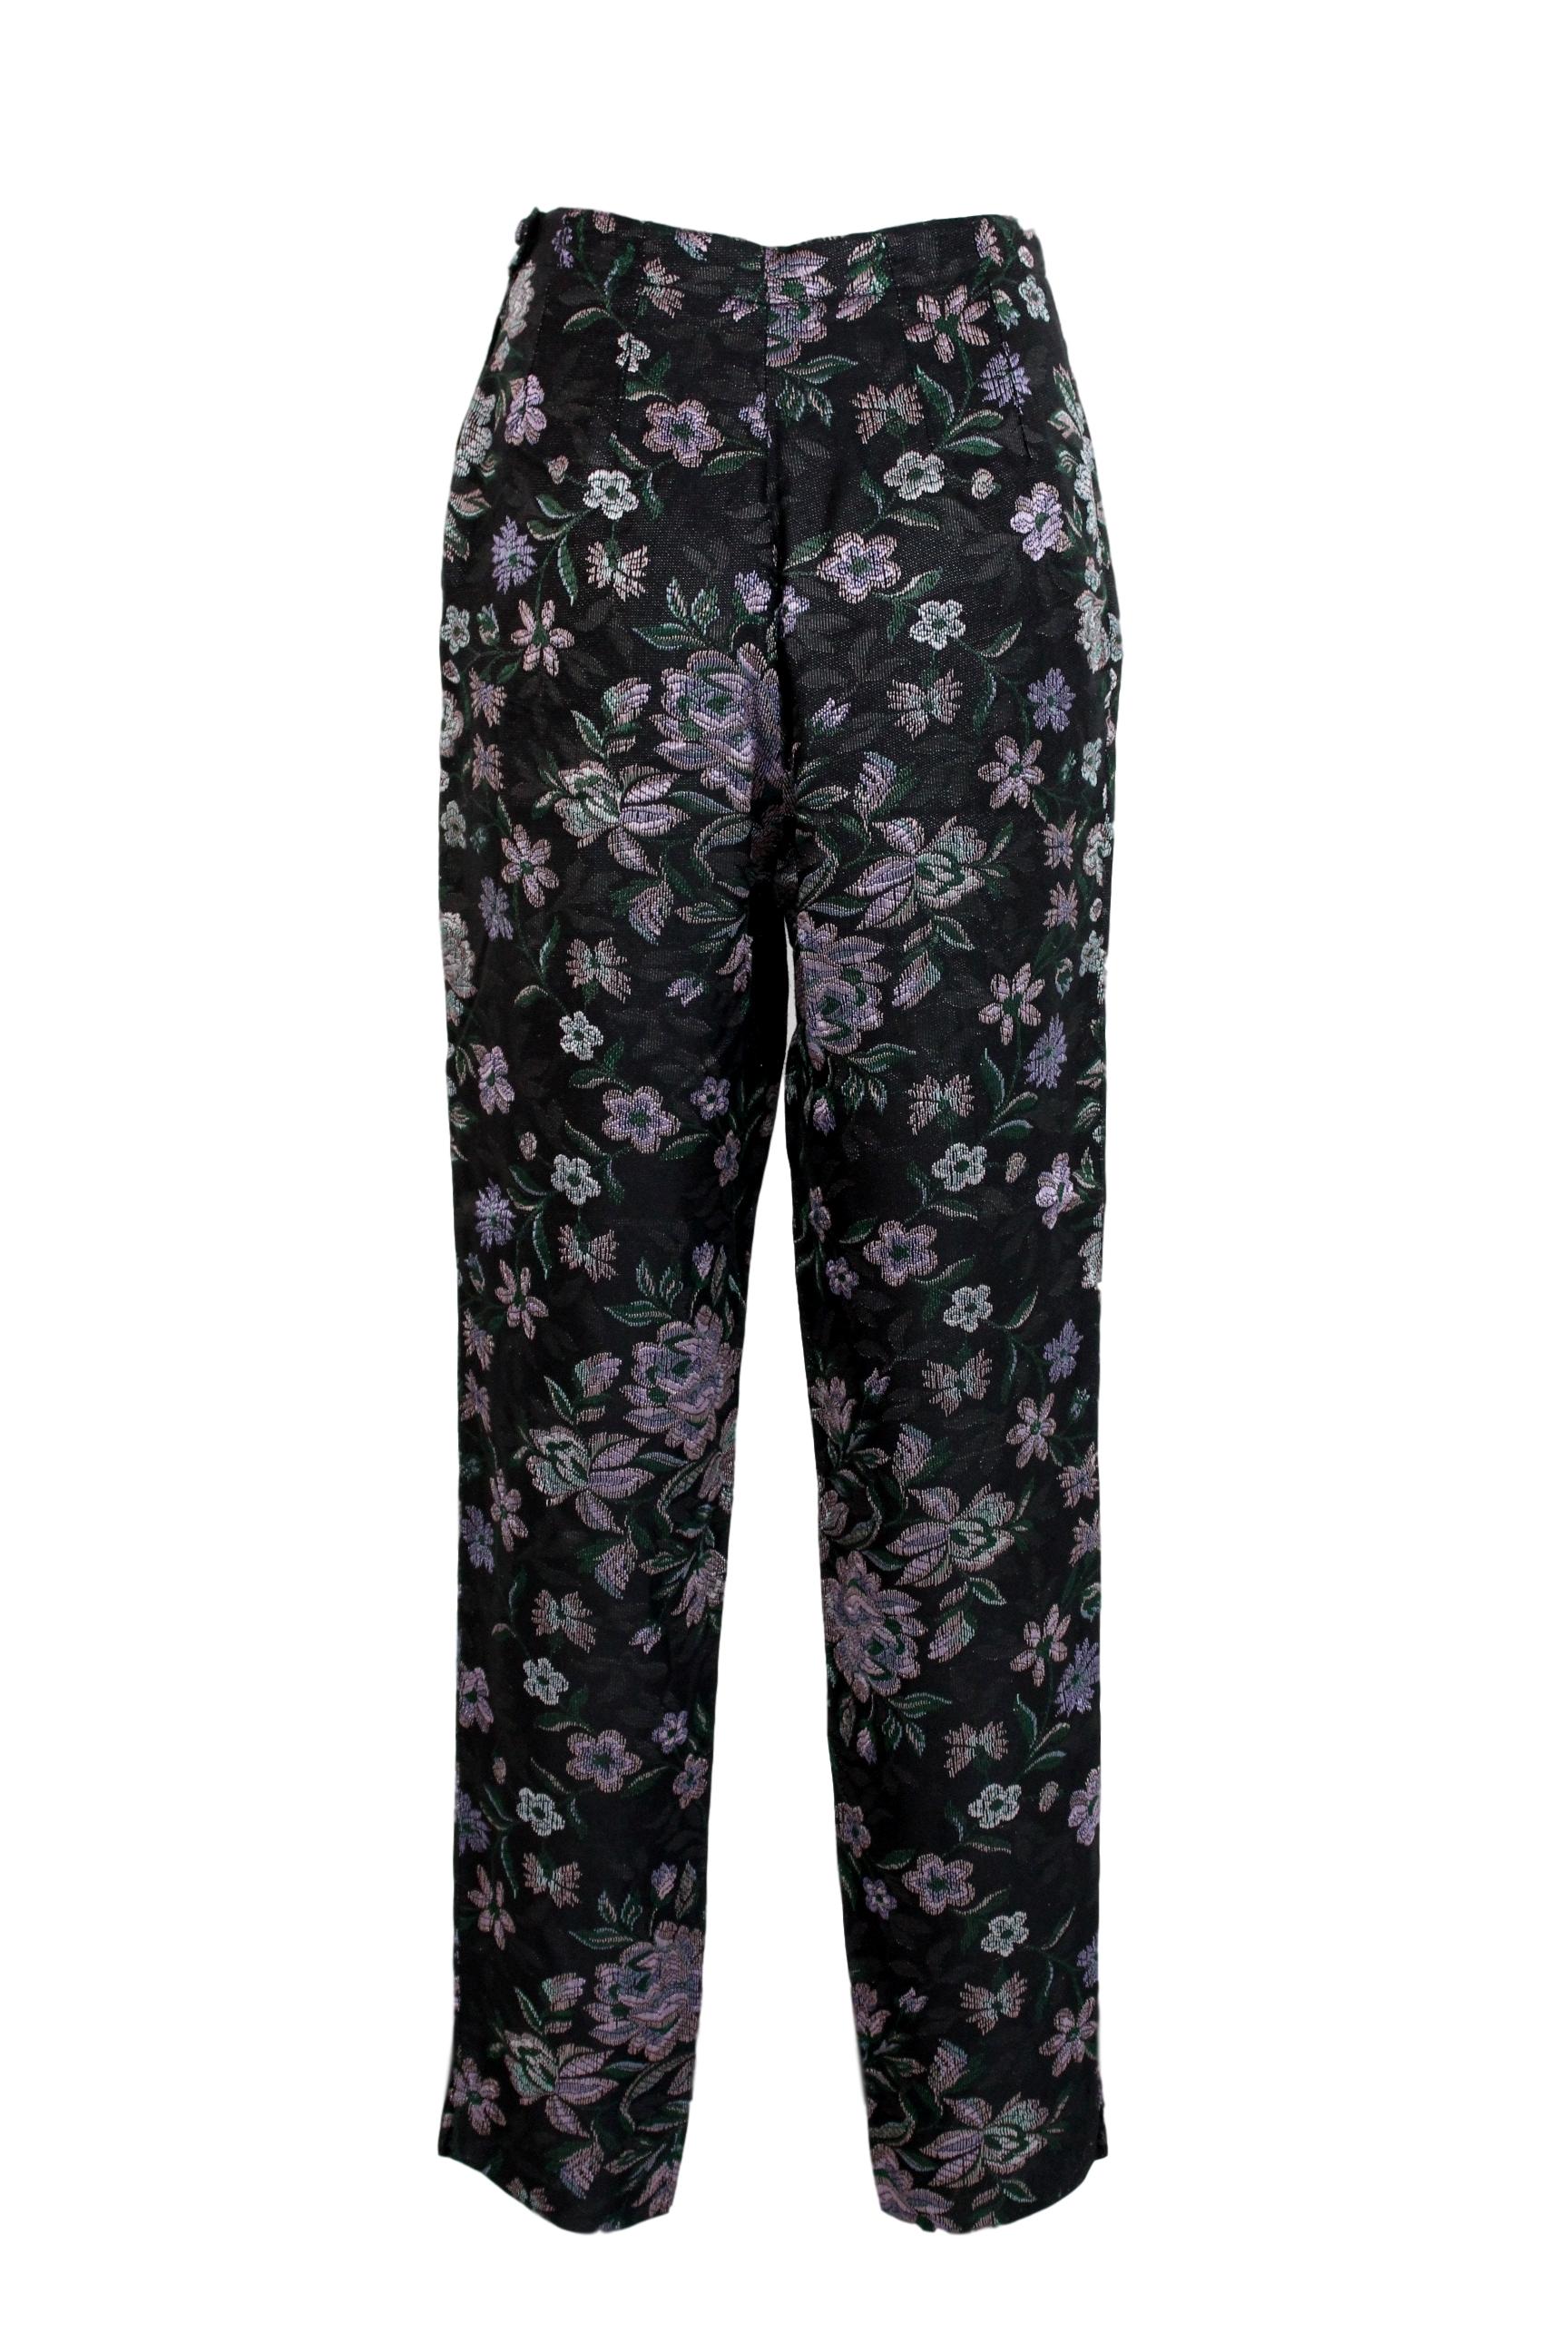 Emporio Armani Black Pink Cotton Damask Floral Pants Suit 6